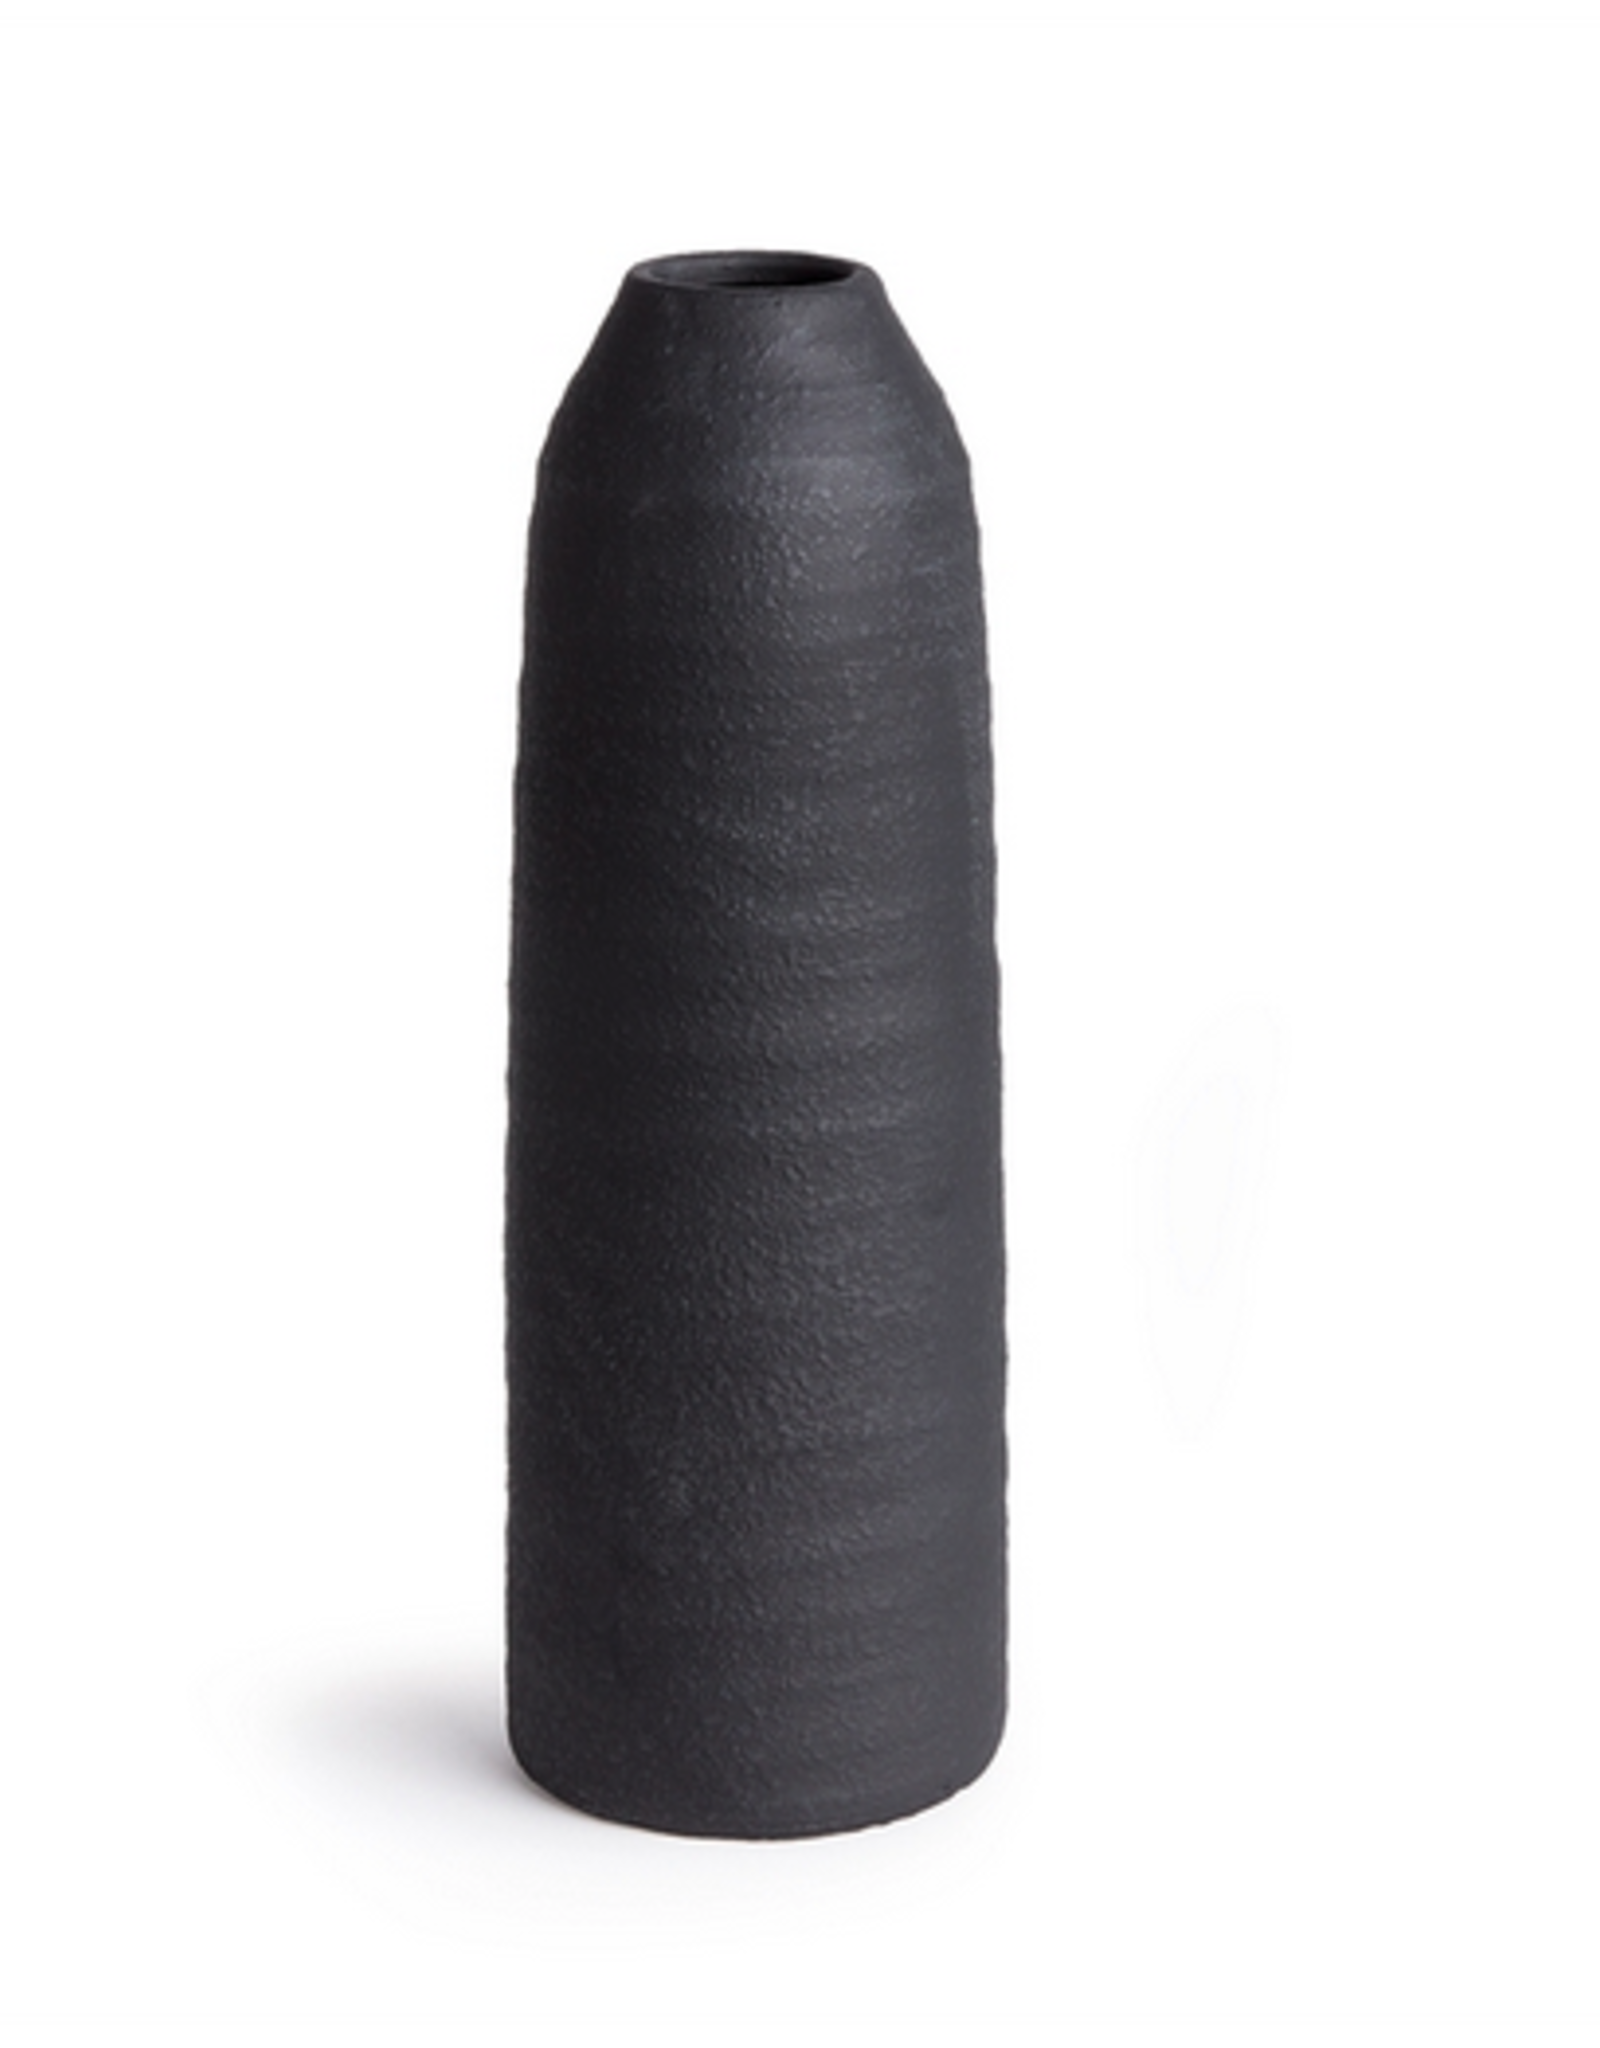 Small Black Geena Vase H22.5"